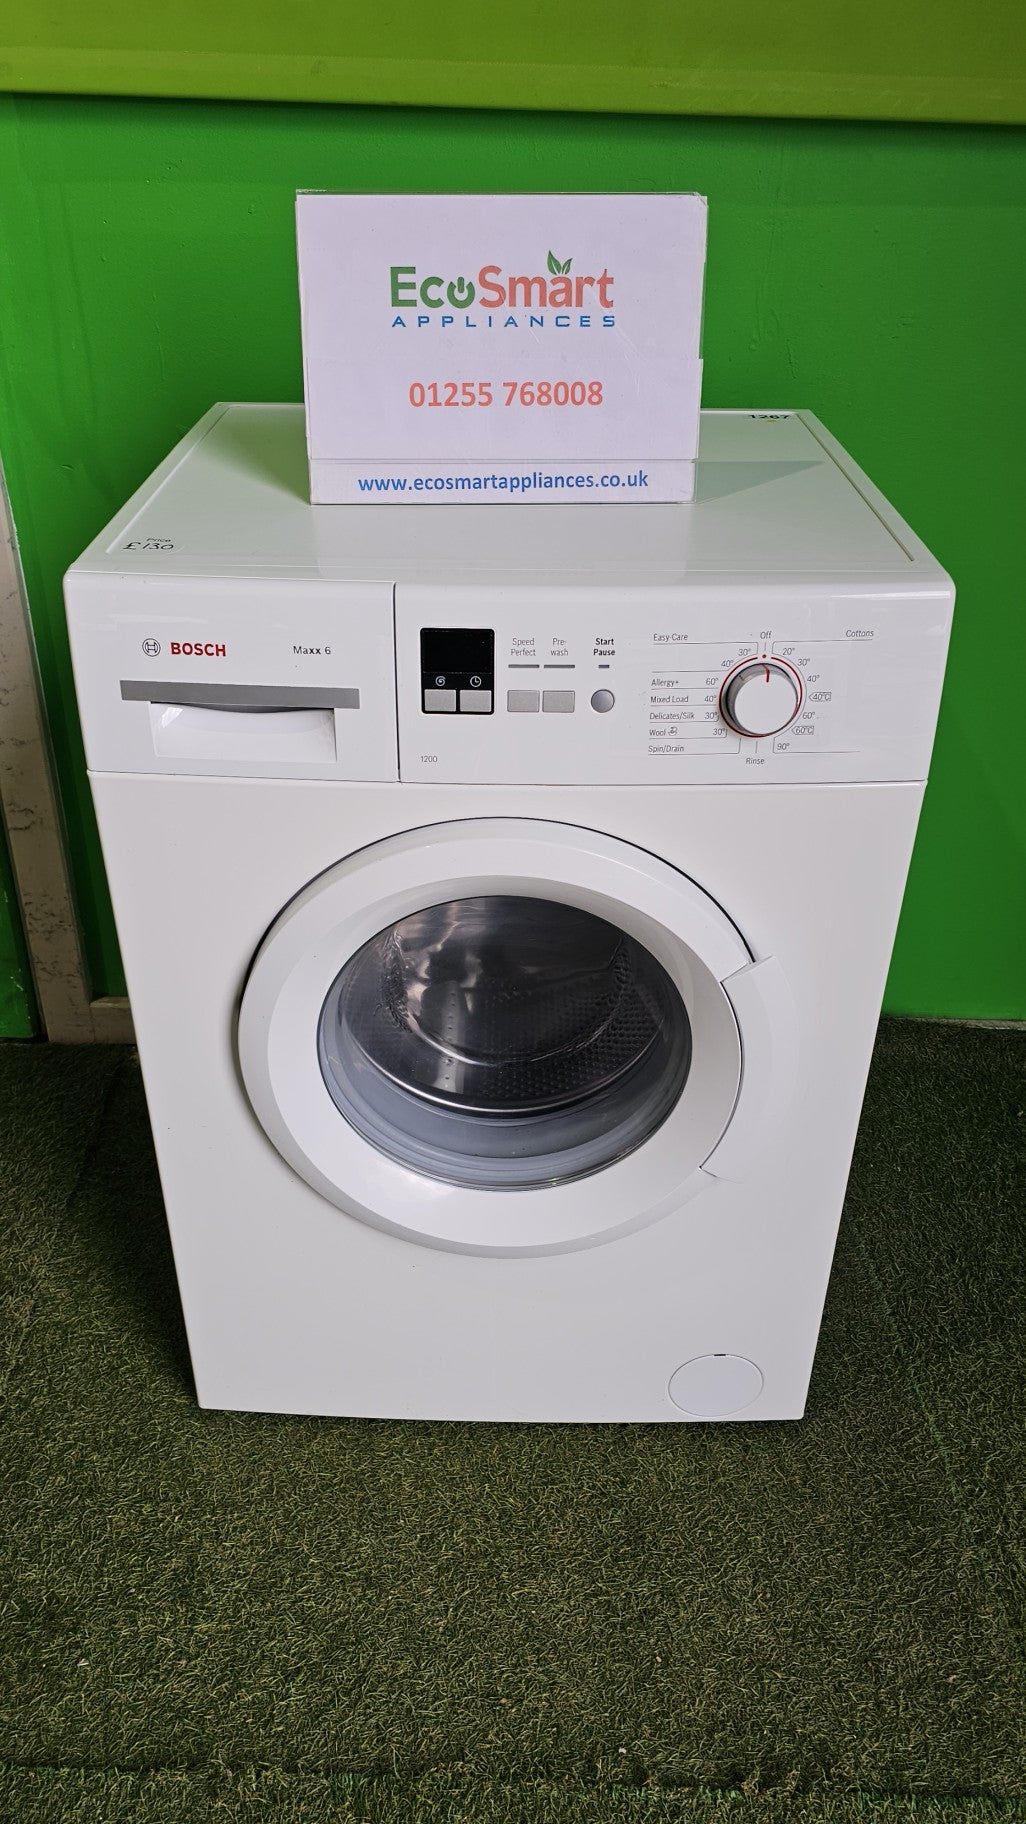 EcoSmart Appliances - Bosch Maxx 6KG 1200rpm Washing Machine (1267)